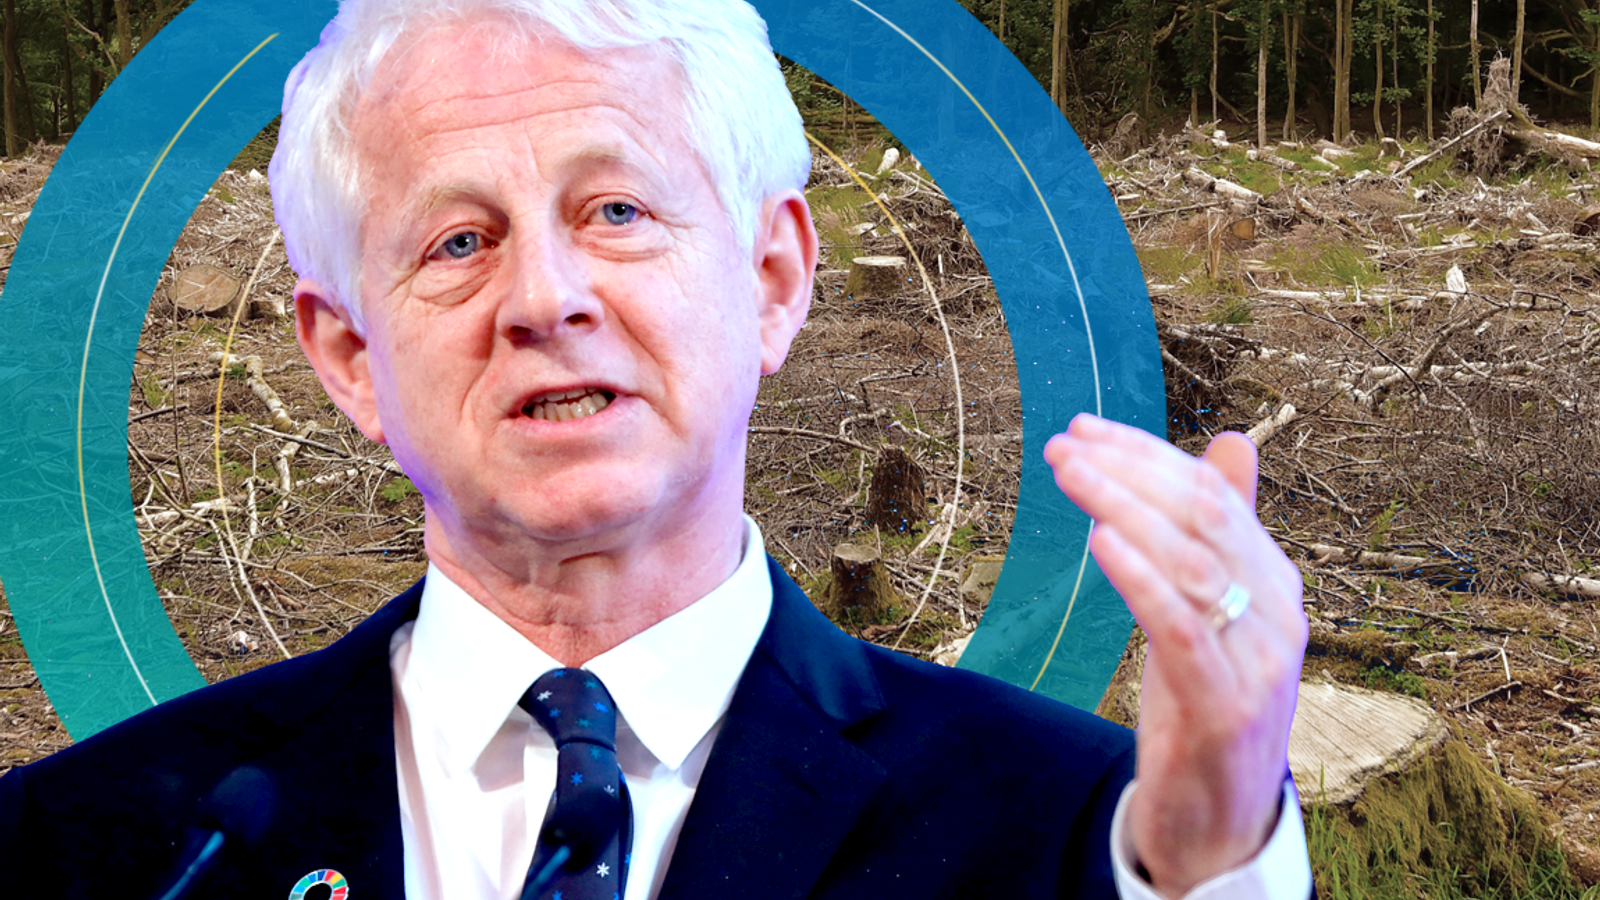 'Red alert': Billions of UK pension money driving deforestation, says Richard Curtis